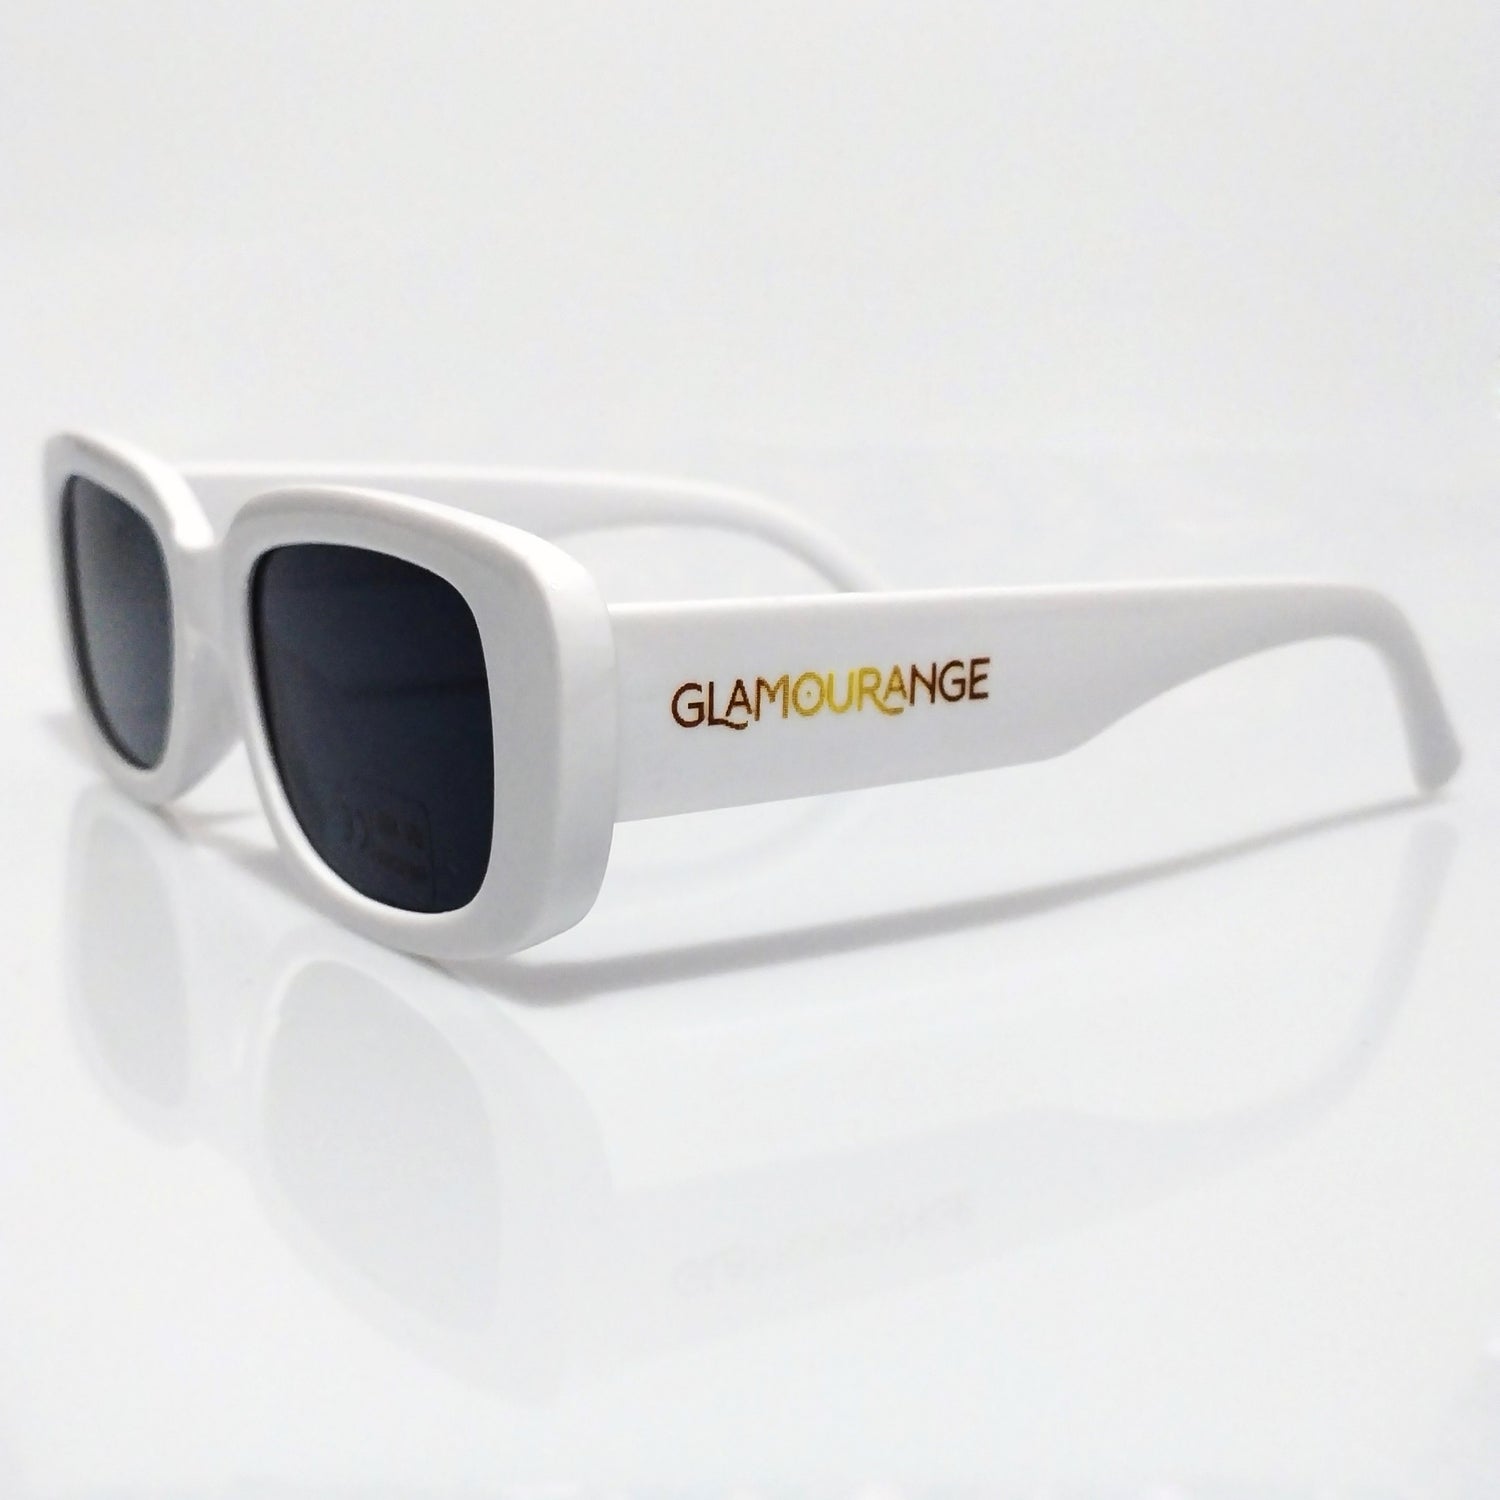 Best Sellers Glamourange Designer Sunglasses